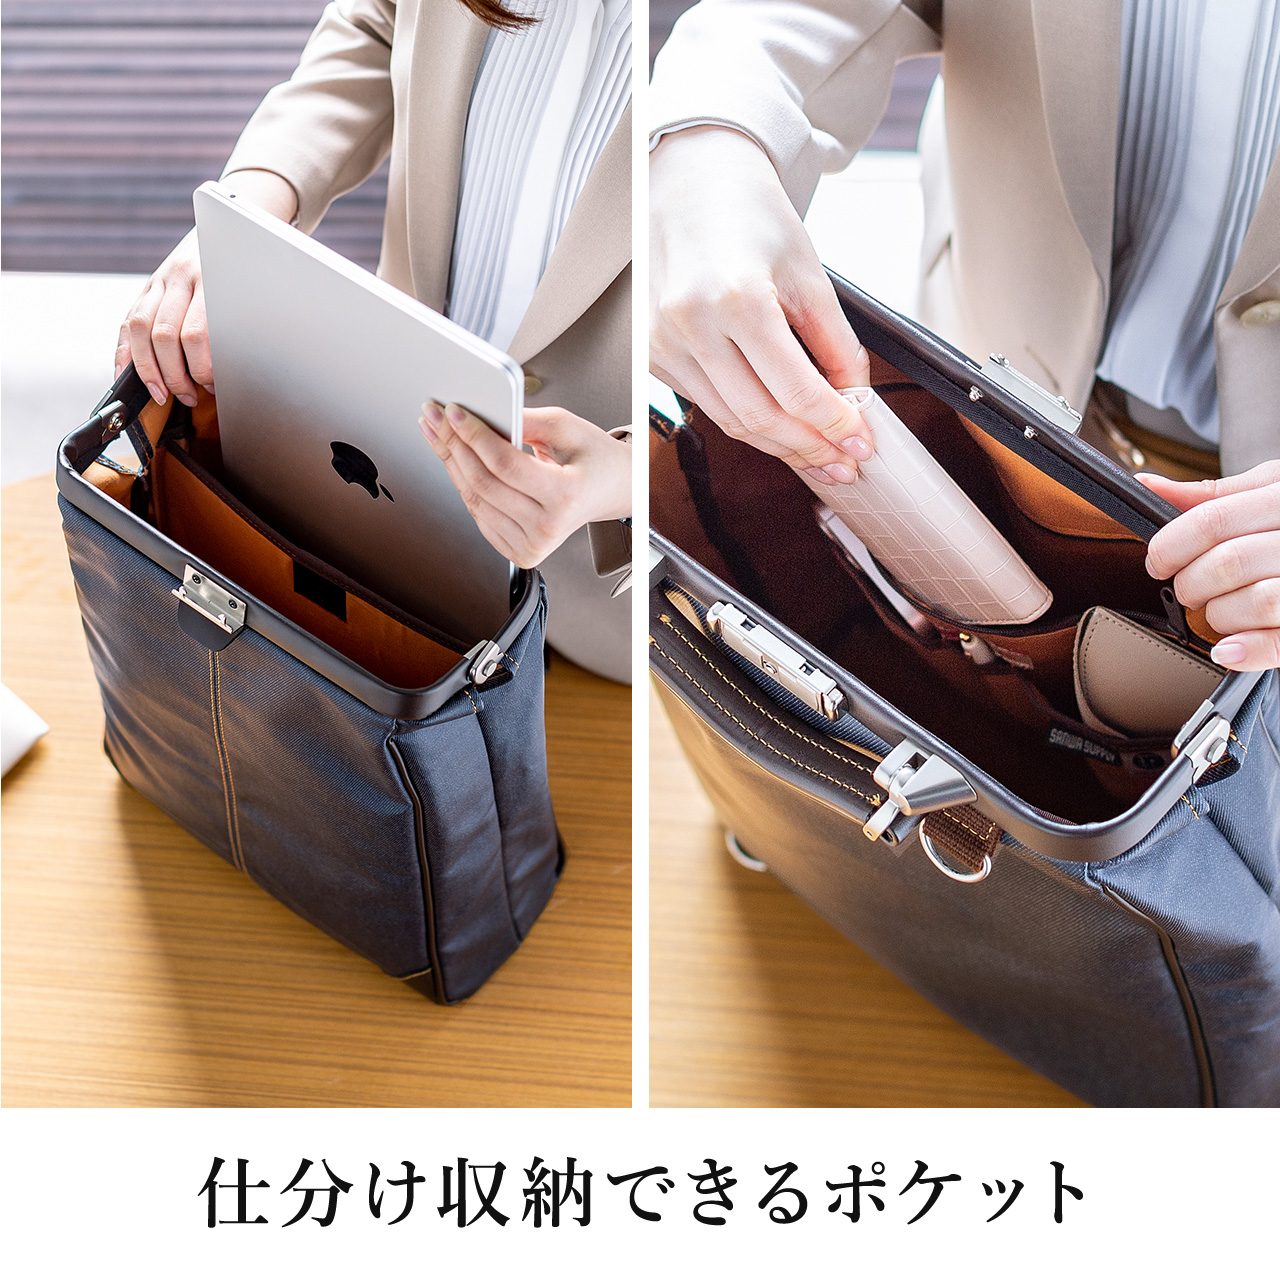 ダレスバッグ メンズ ビジネスバッグ ビジネスリュック 豊岡鞄 日本製 簡易防水 耐水 本革 3WAY 鍵付 縦型 40代 50代 ビジネスバック  200-BAG148